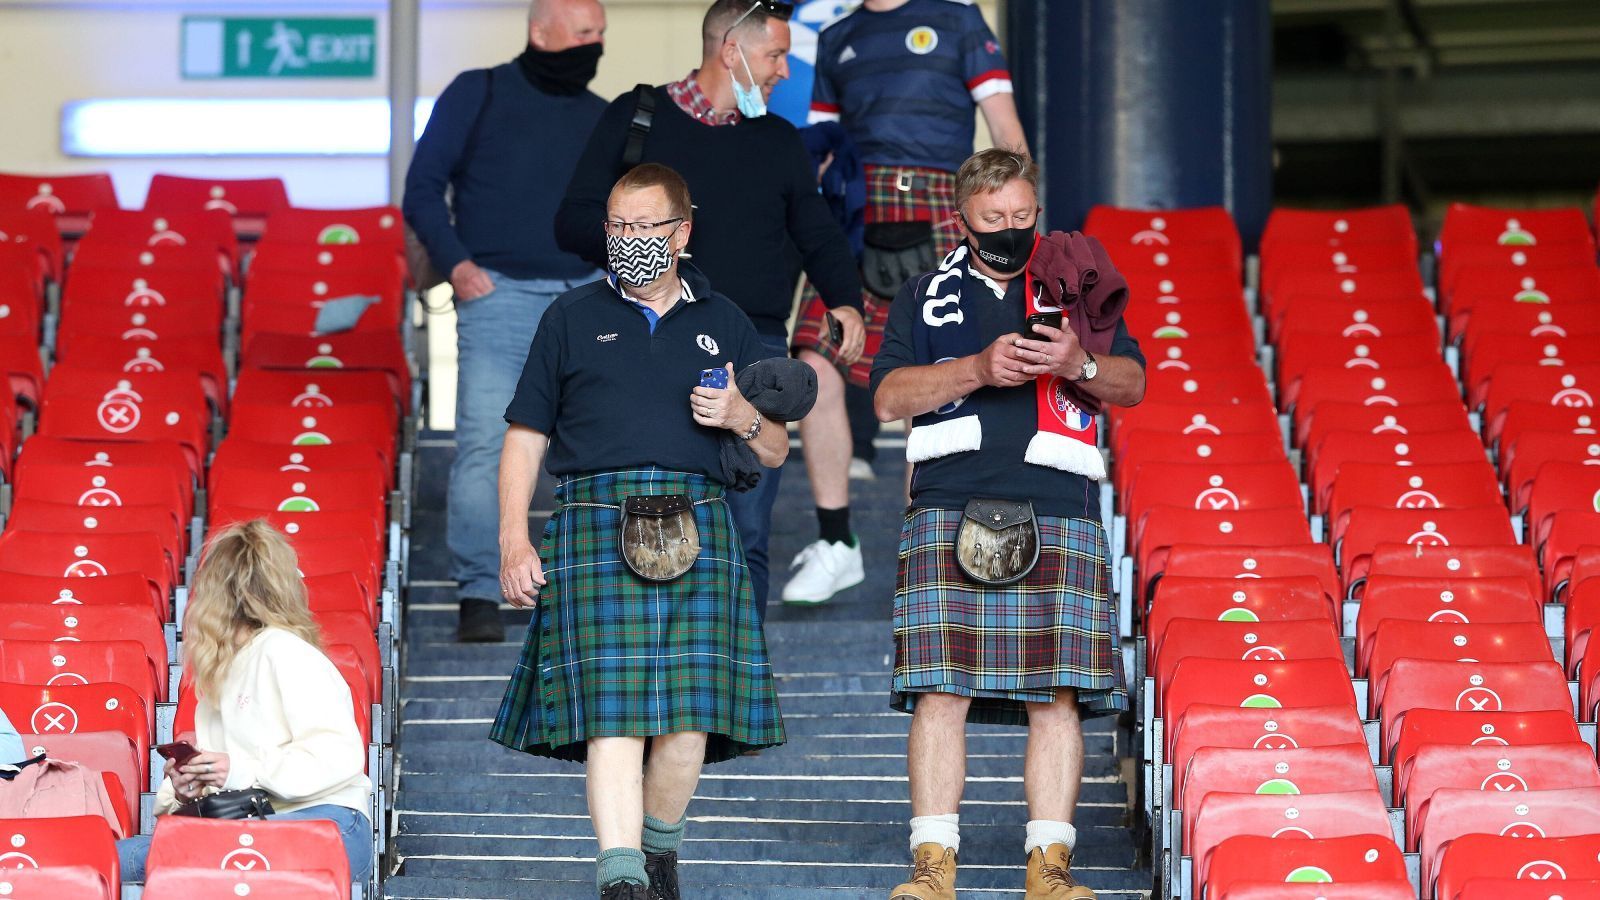 
                <strong>Traditionelle Kluft der Schotten</strong><br>
                Es ist zwar eine Pandemie und Abstand muss gehalten werden, jedoch hält das die Fans der "Bravehearts" nicht davon ab, ihre traditionelle Kluft für den Stadionbesuch auszupacken.
              